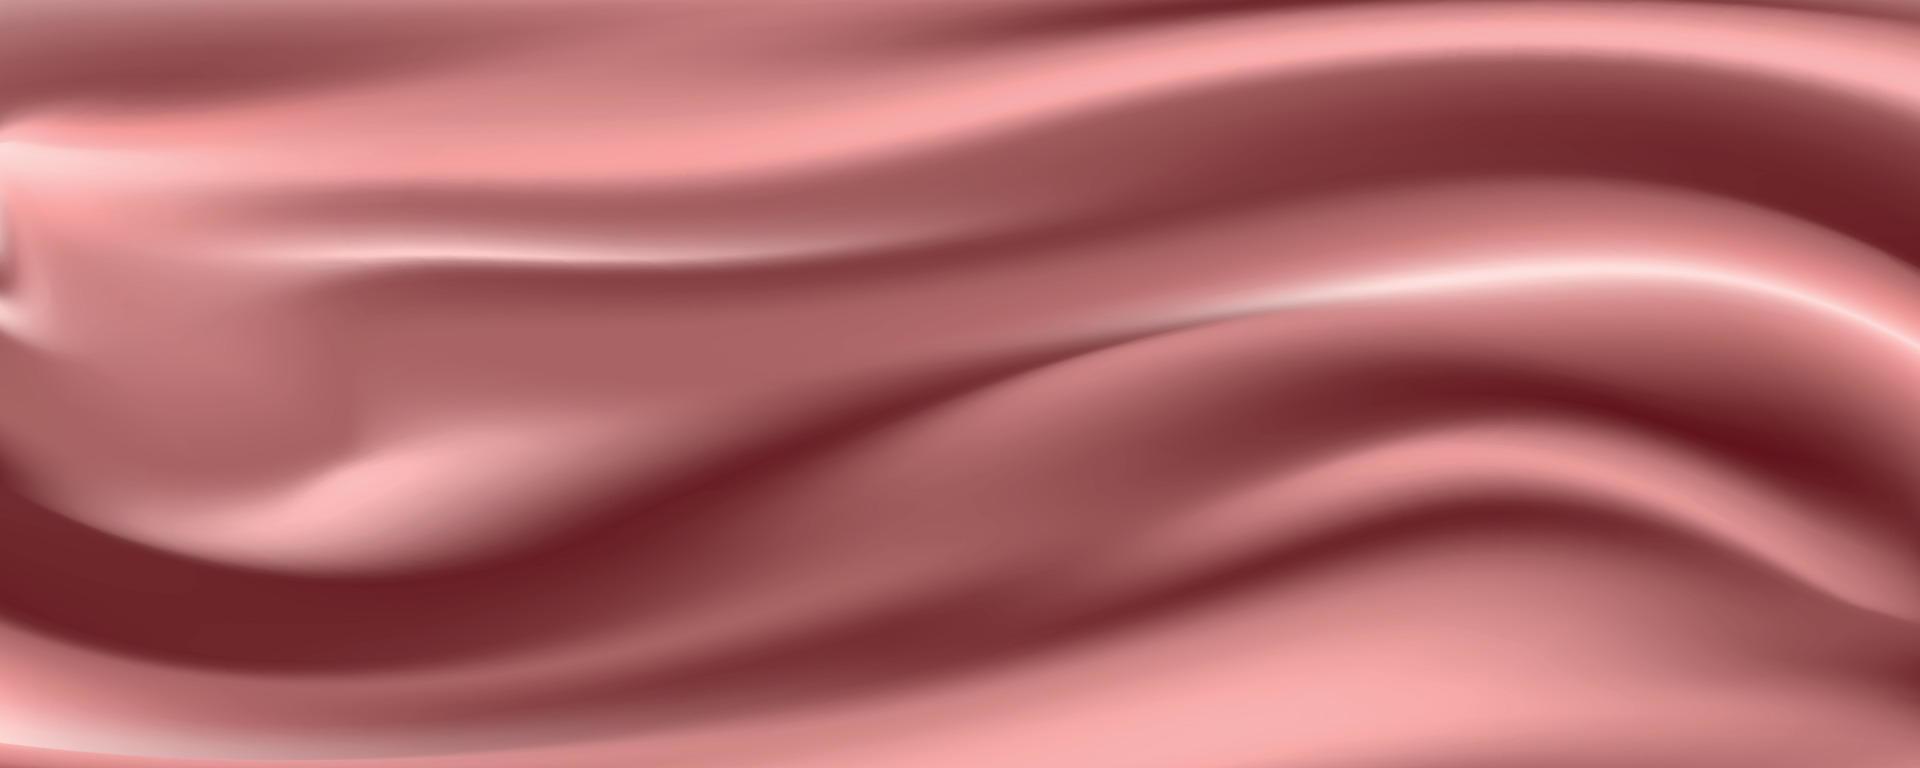 rose goud zijde stof abstracte achtergrond, vectorillustratie vector